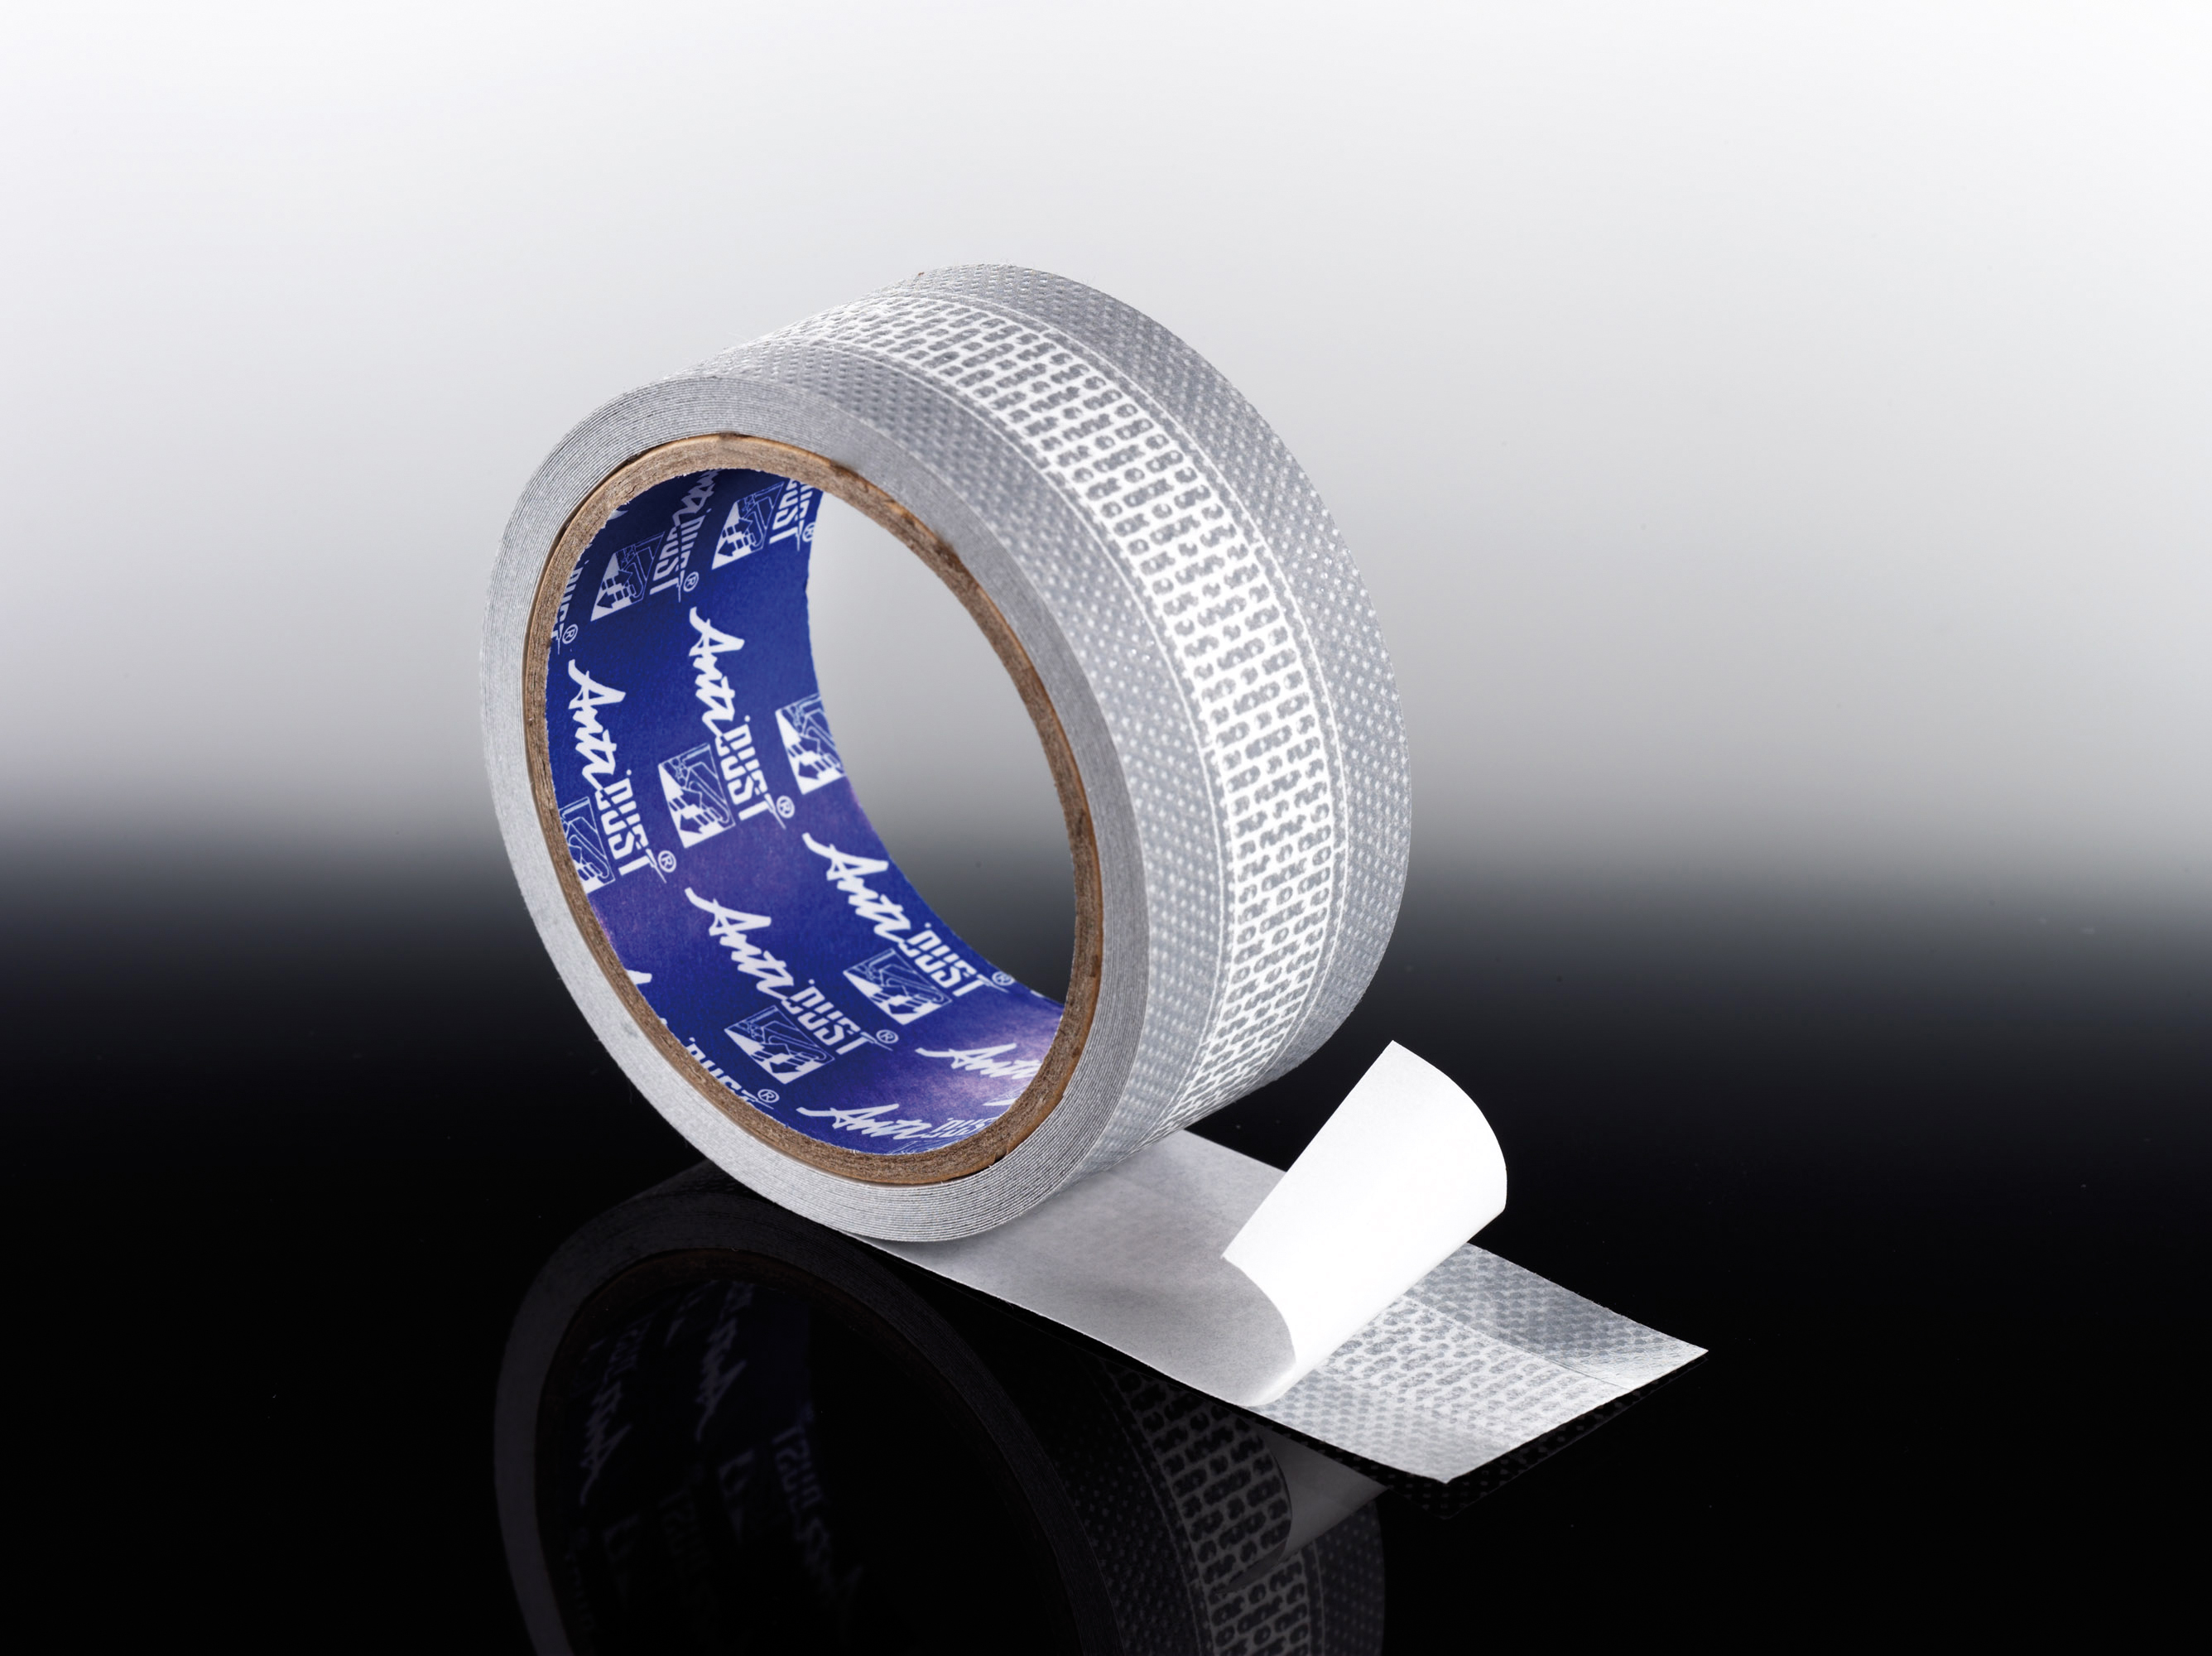 T&J Anti-Dust Tape 50 mm (6,5m Länge)
Abdichtungsband 
für 25 mm Stegplatten